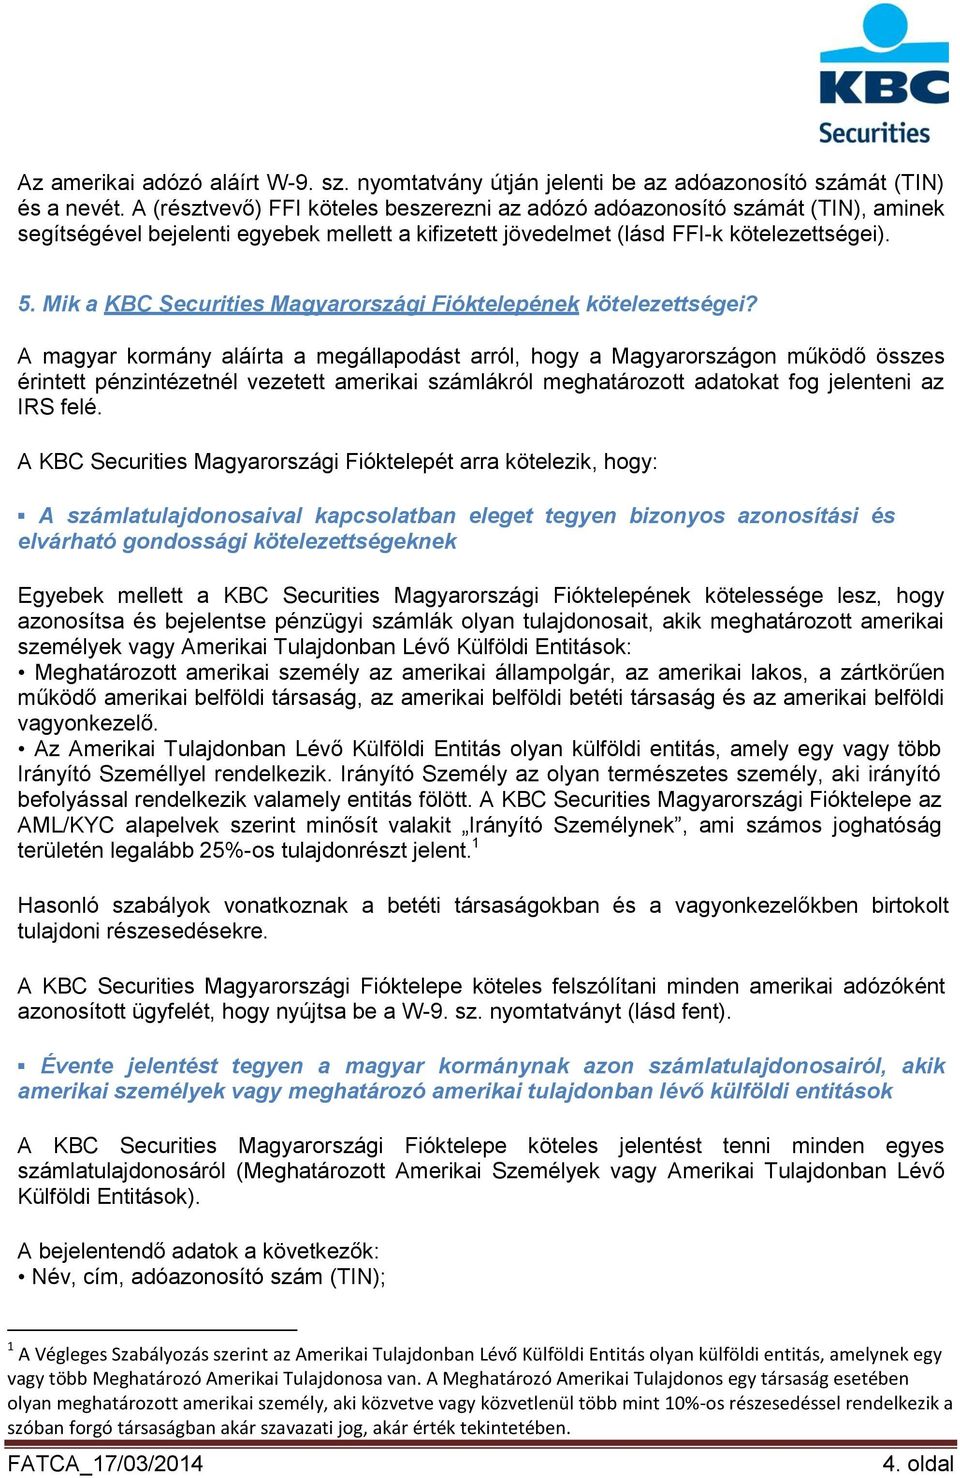 Mik a KBC Securities Magyarországi Fióktelepének kötelezettségei?